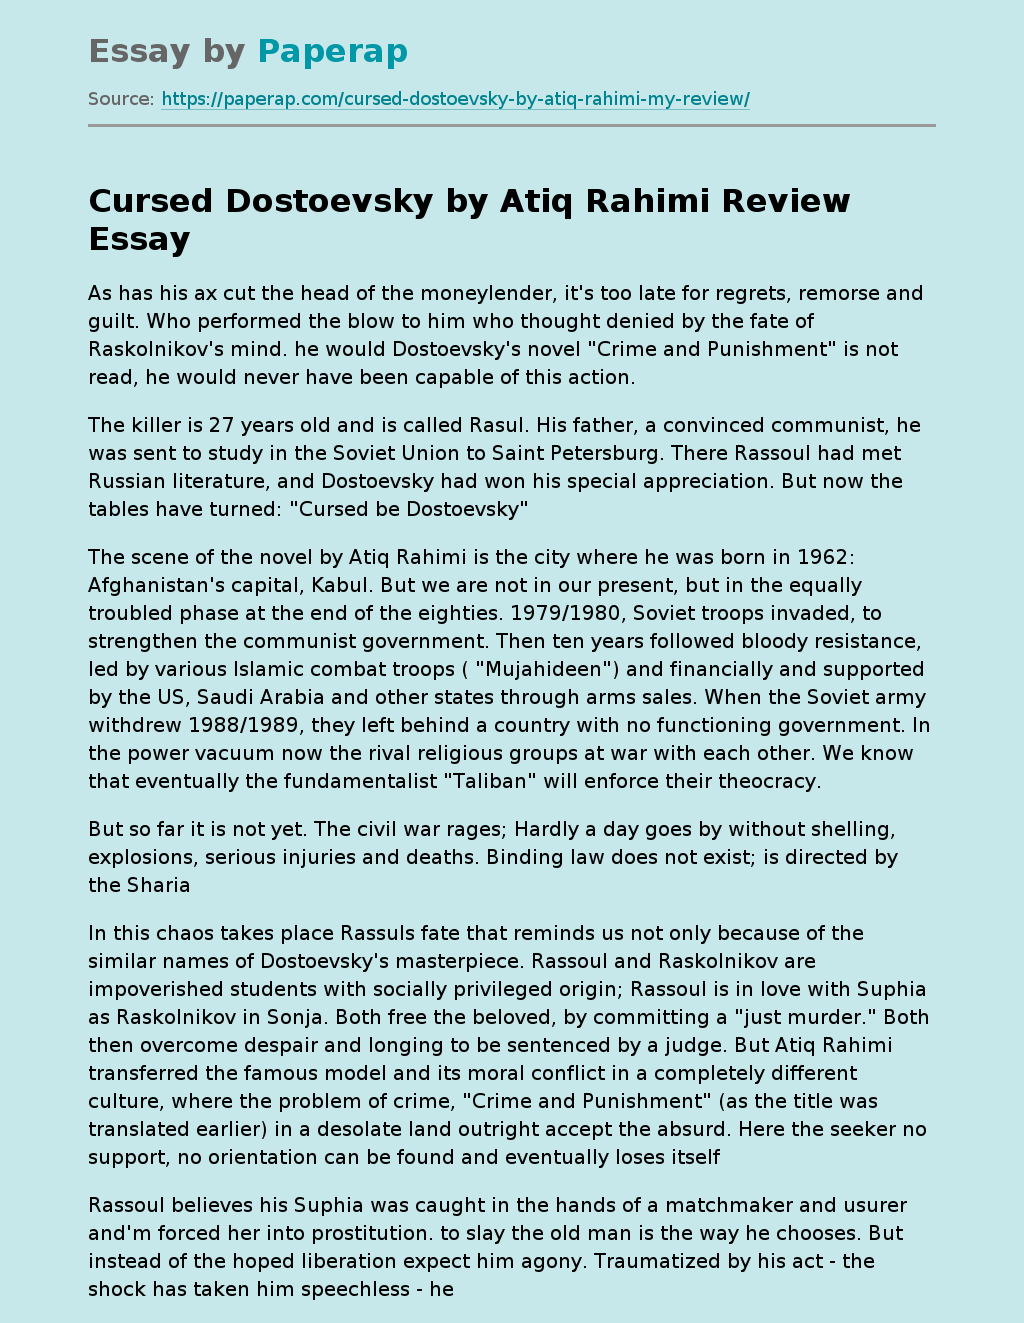 Cursed Dostoevsky by Atiq Rahimi Review